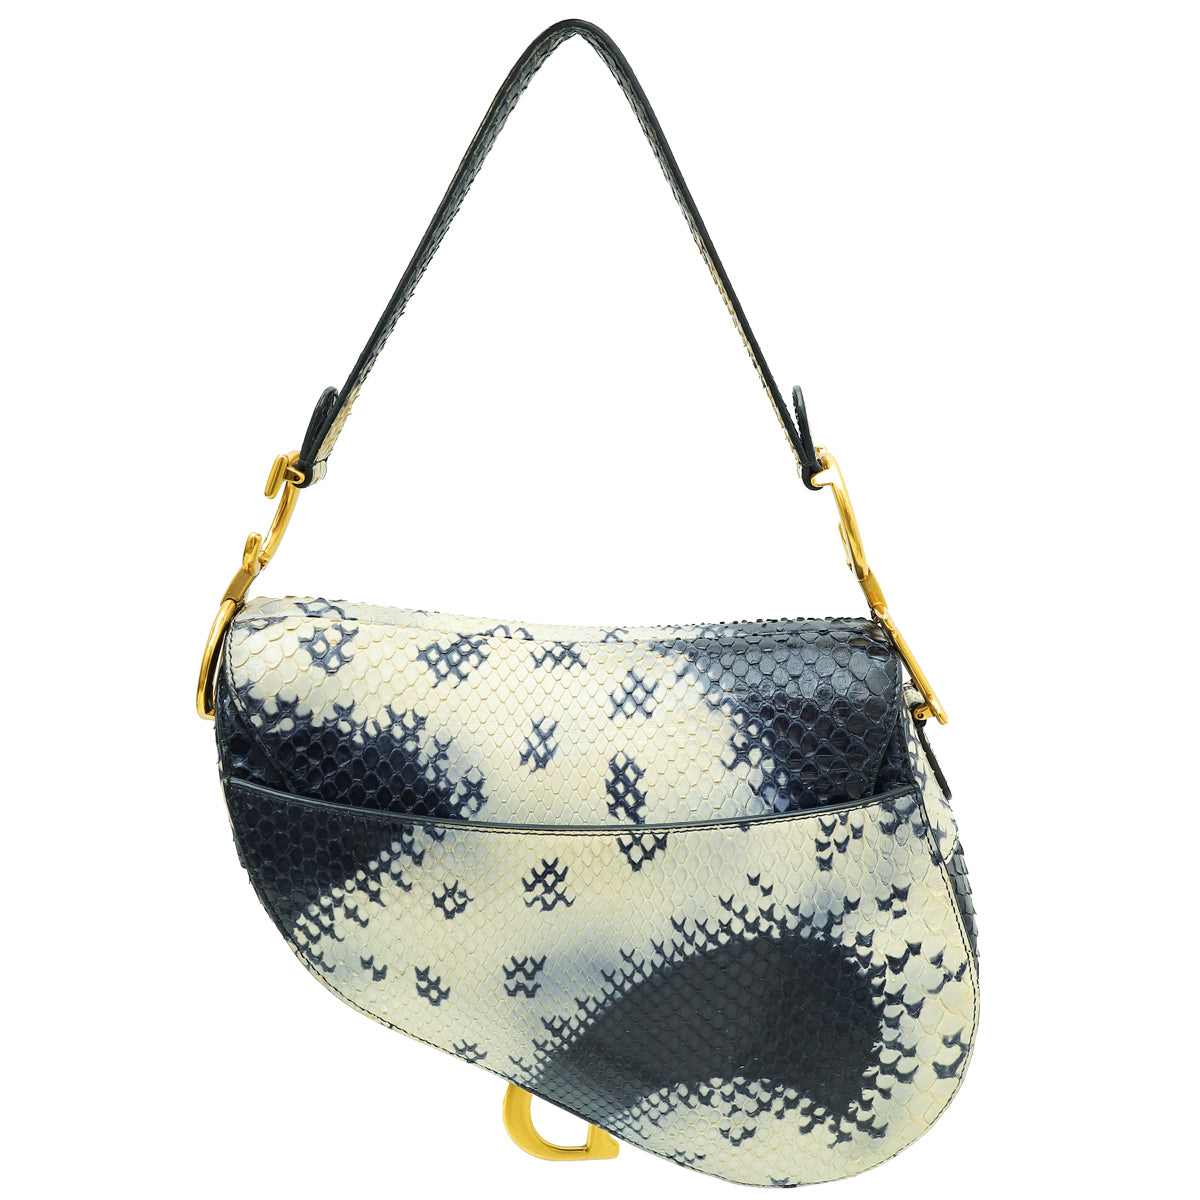 Christian Dior Navy Blue Python Saddle Medium Bag